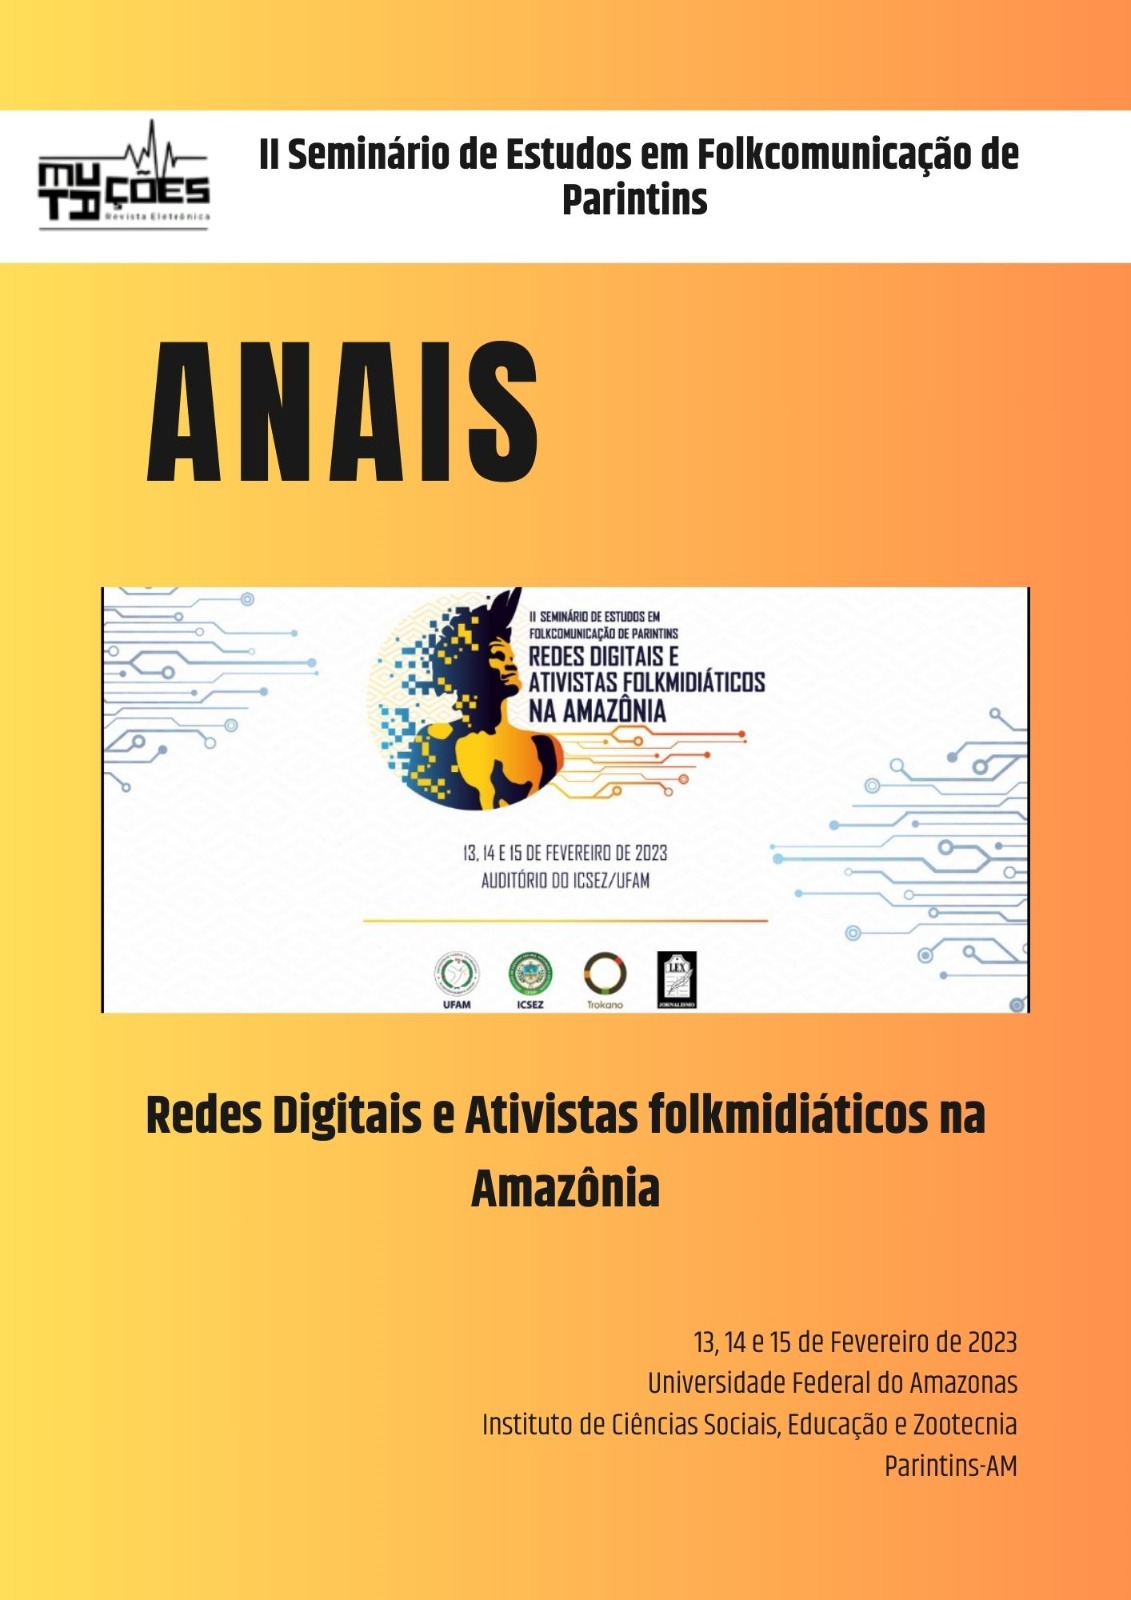 					Ver Vol. 16 Núm. 26, Sup. 3 (2023): Anais do II Seminário de Estudos em Folkcomiunicação de Parintins: “Redes Digitais e Ativistas Folkmidiáticos na Amazônia”
				